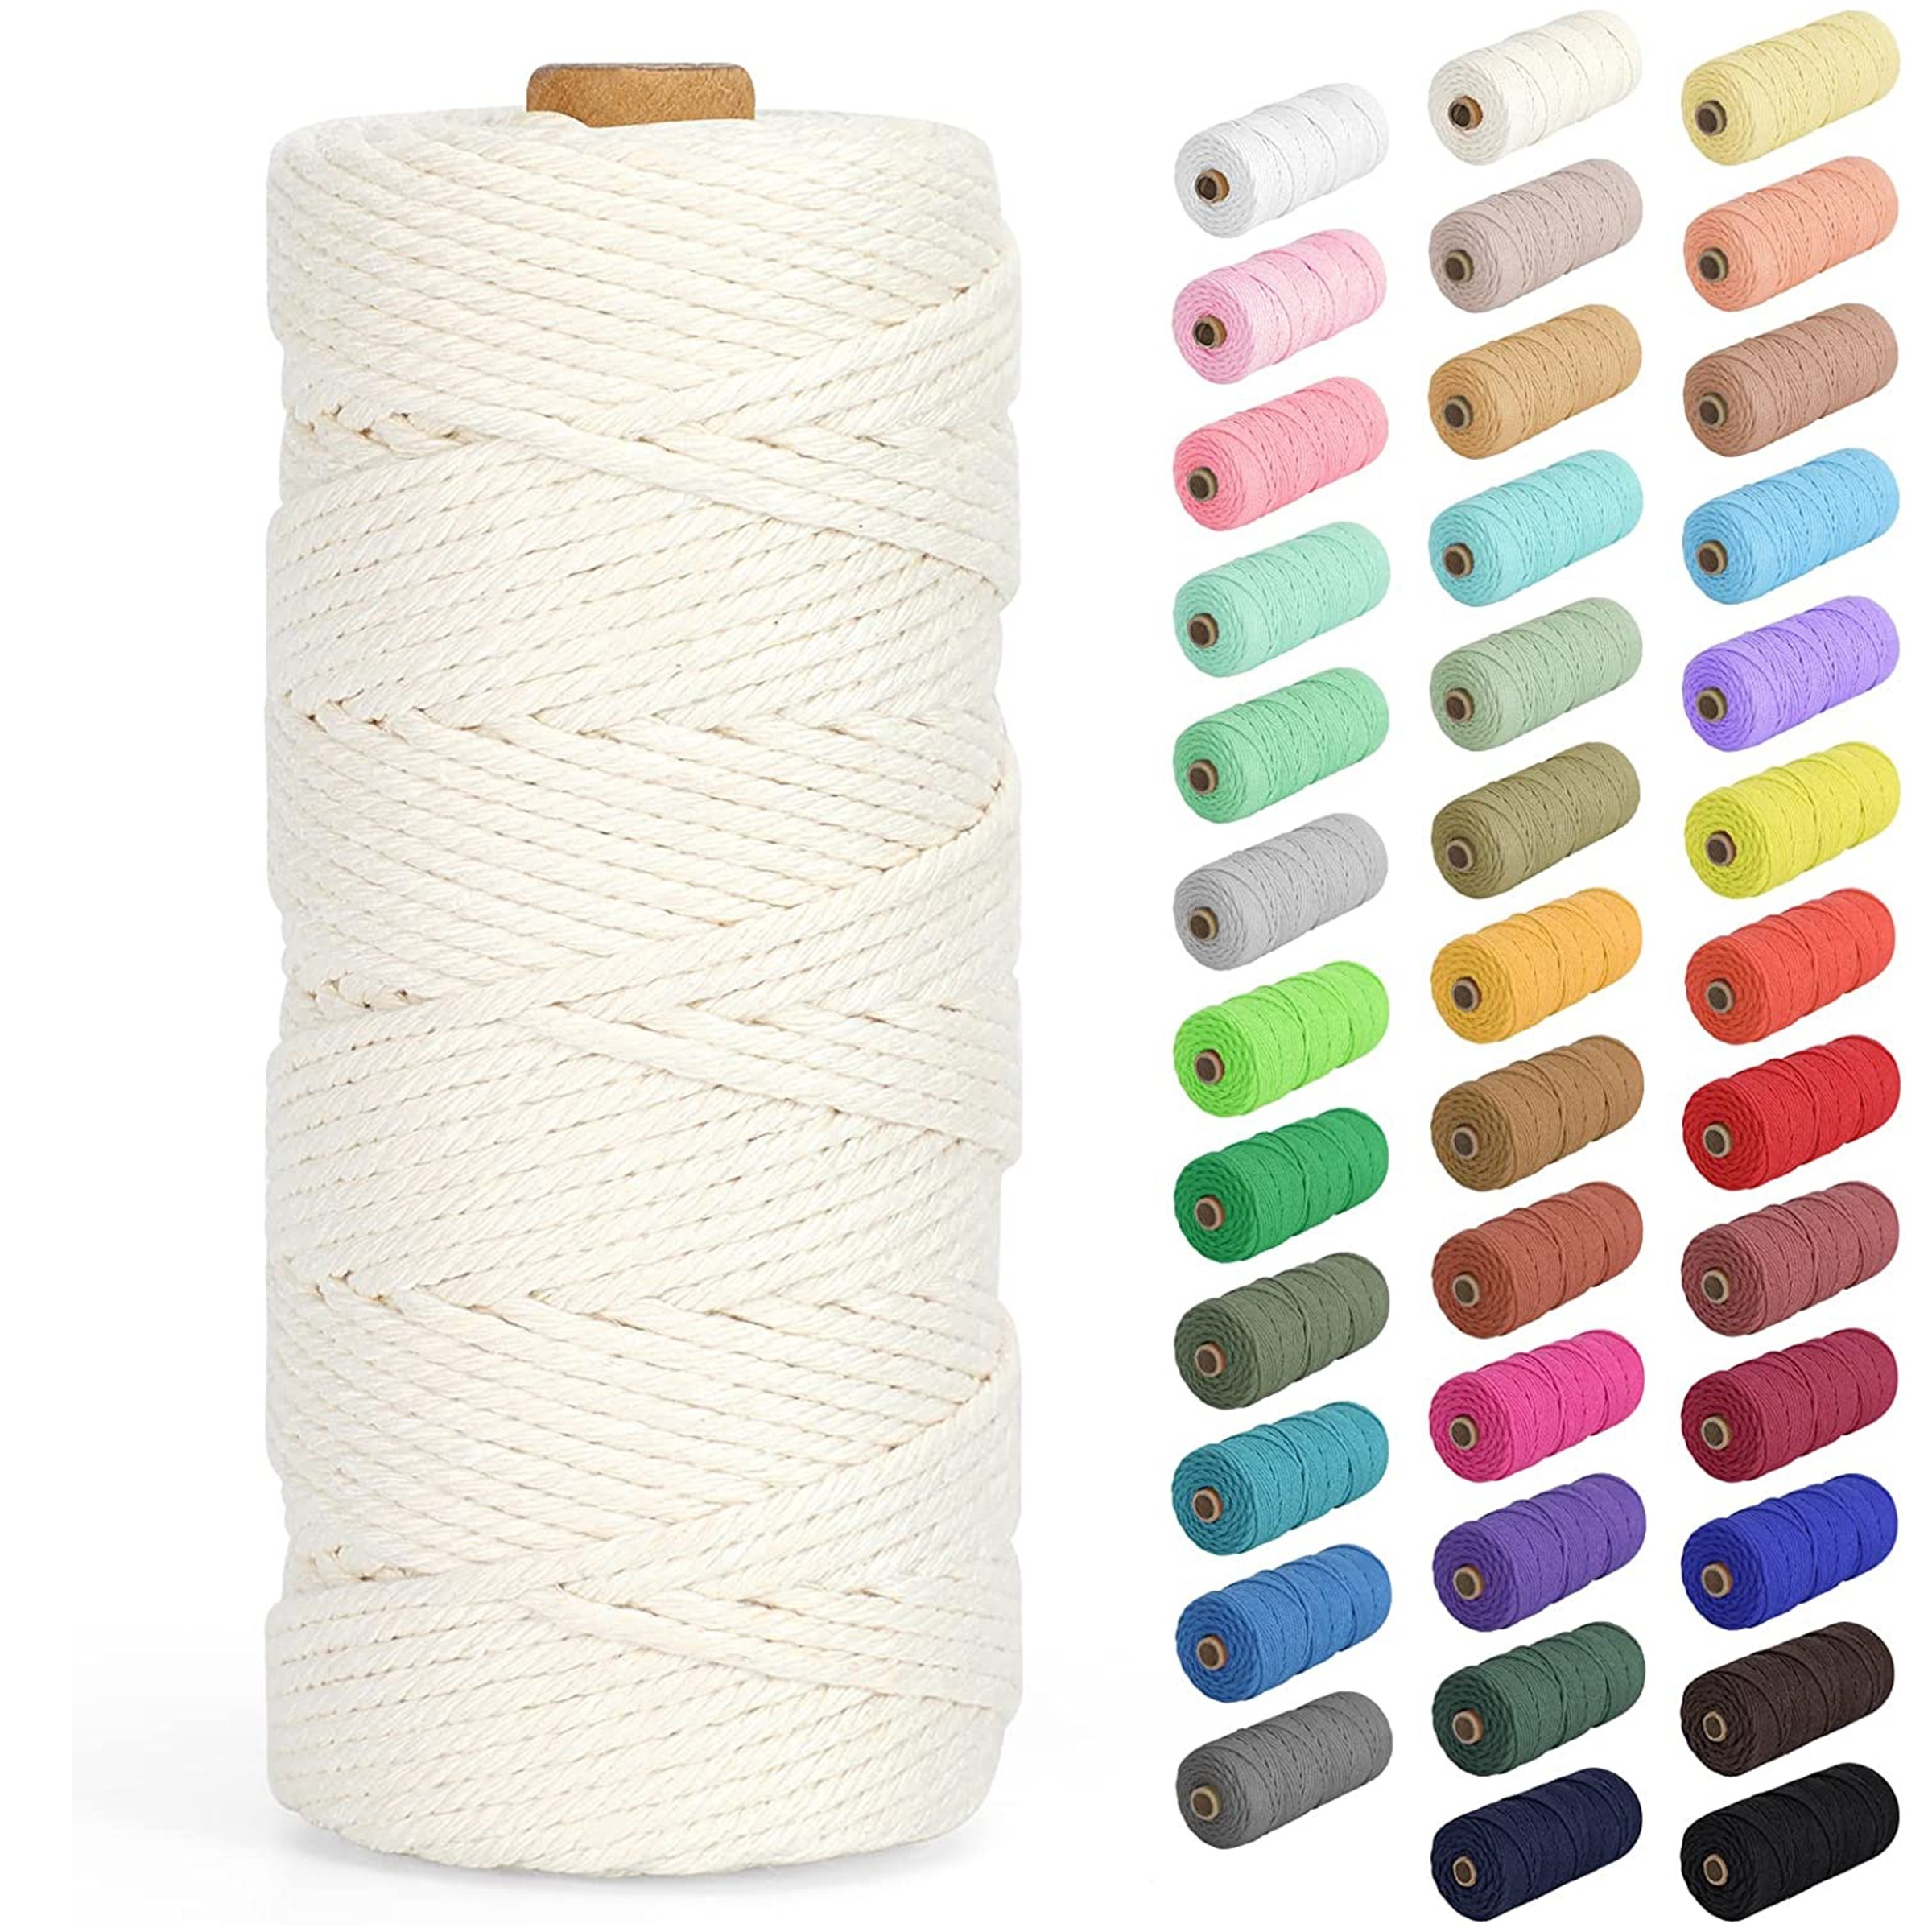 Bobina cuerda algodón para macramé 4mm -Creative Cotton Cord